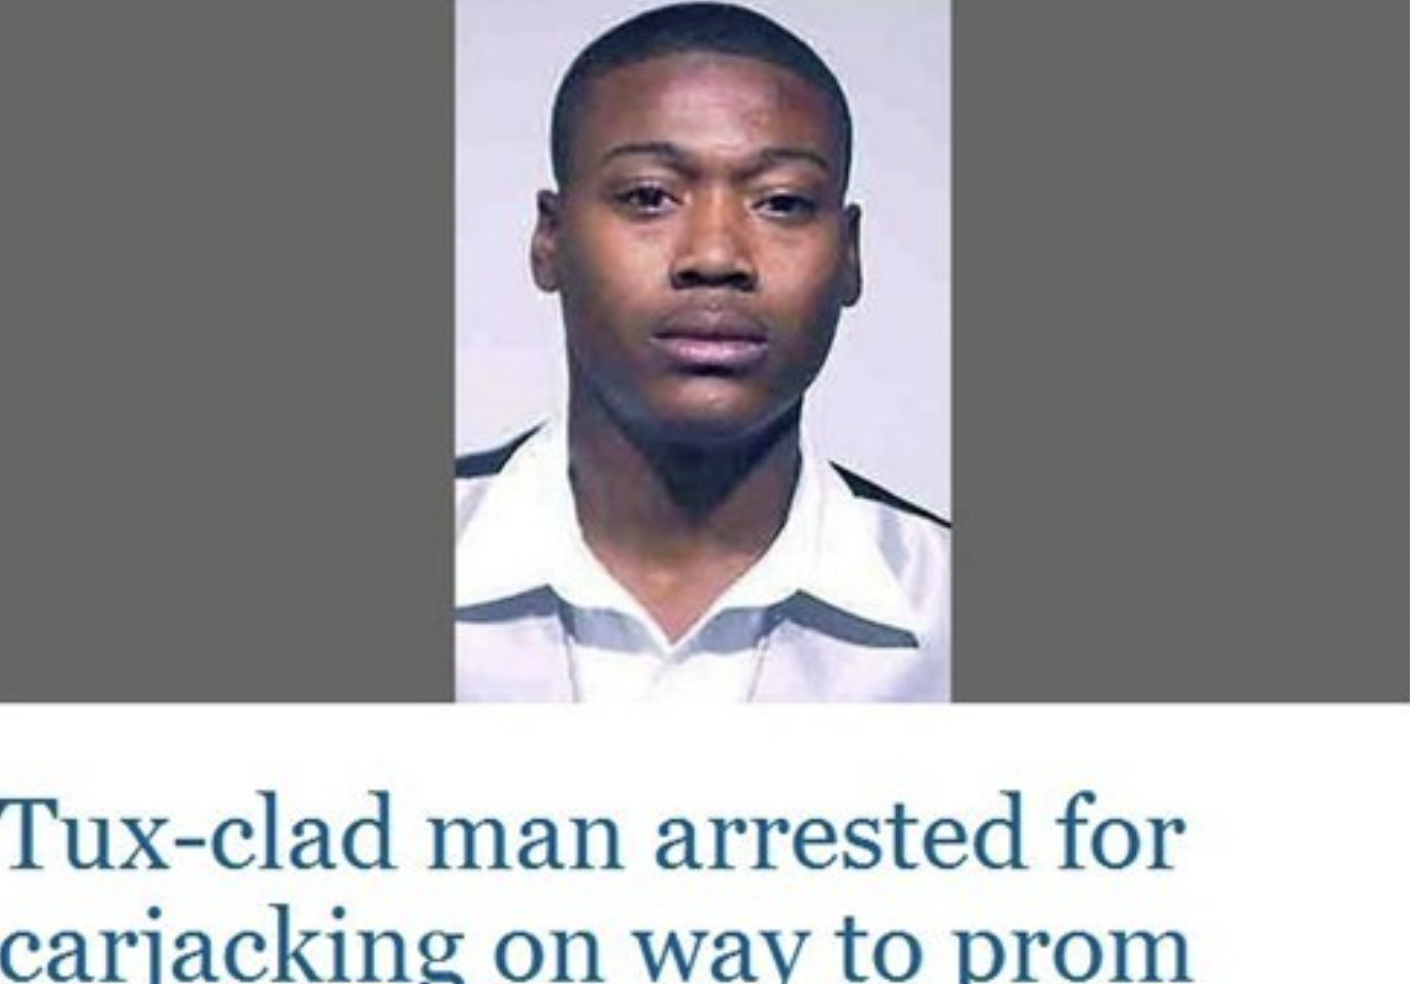 Mug shot - Tuxclad man arrested for carjacking on way to prom